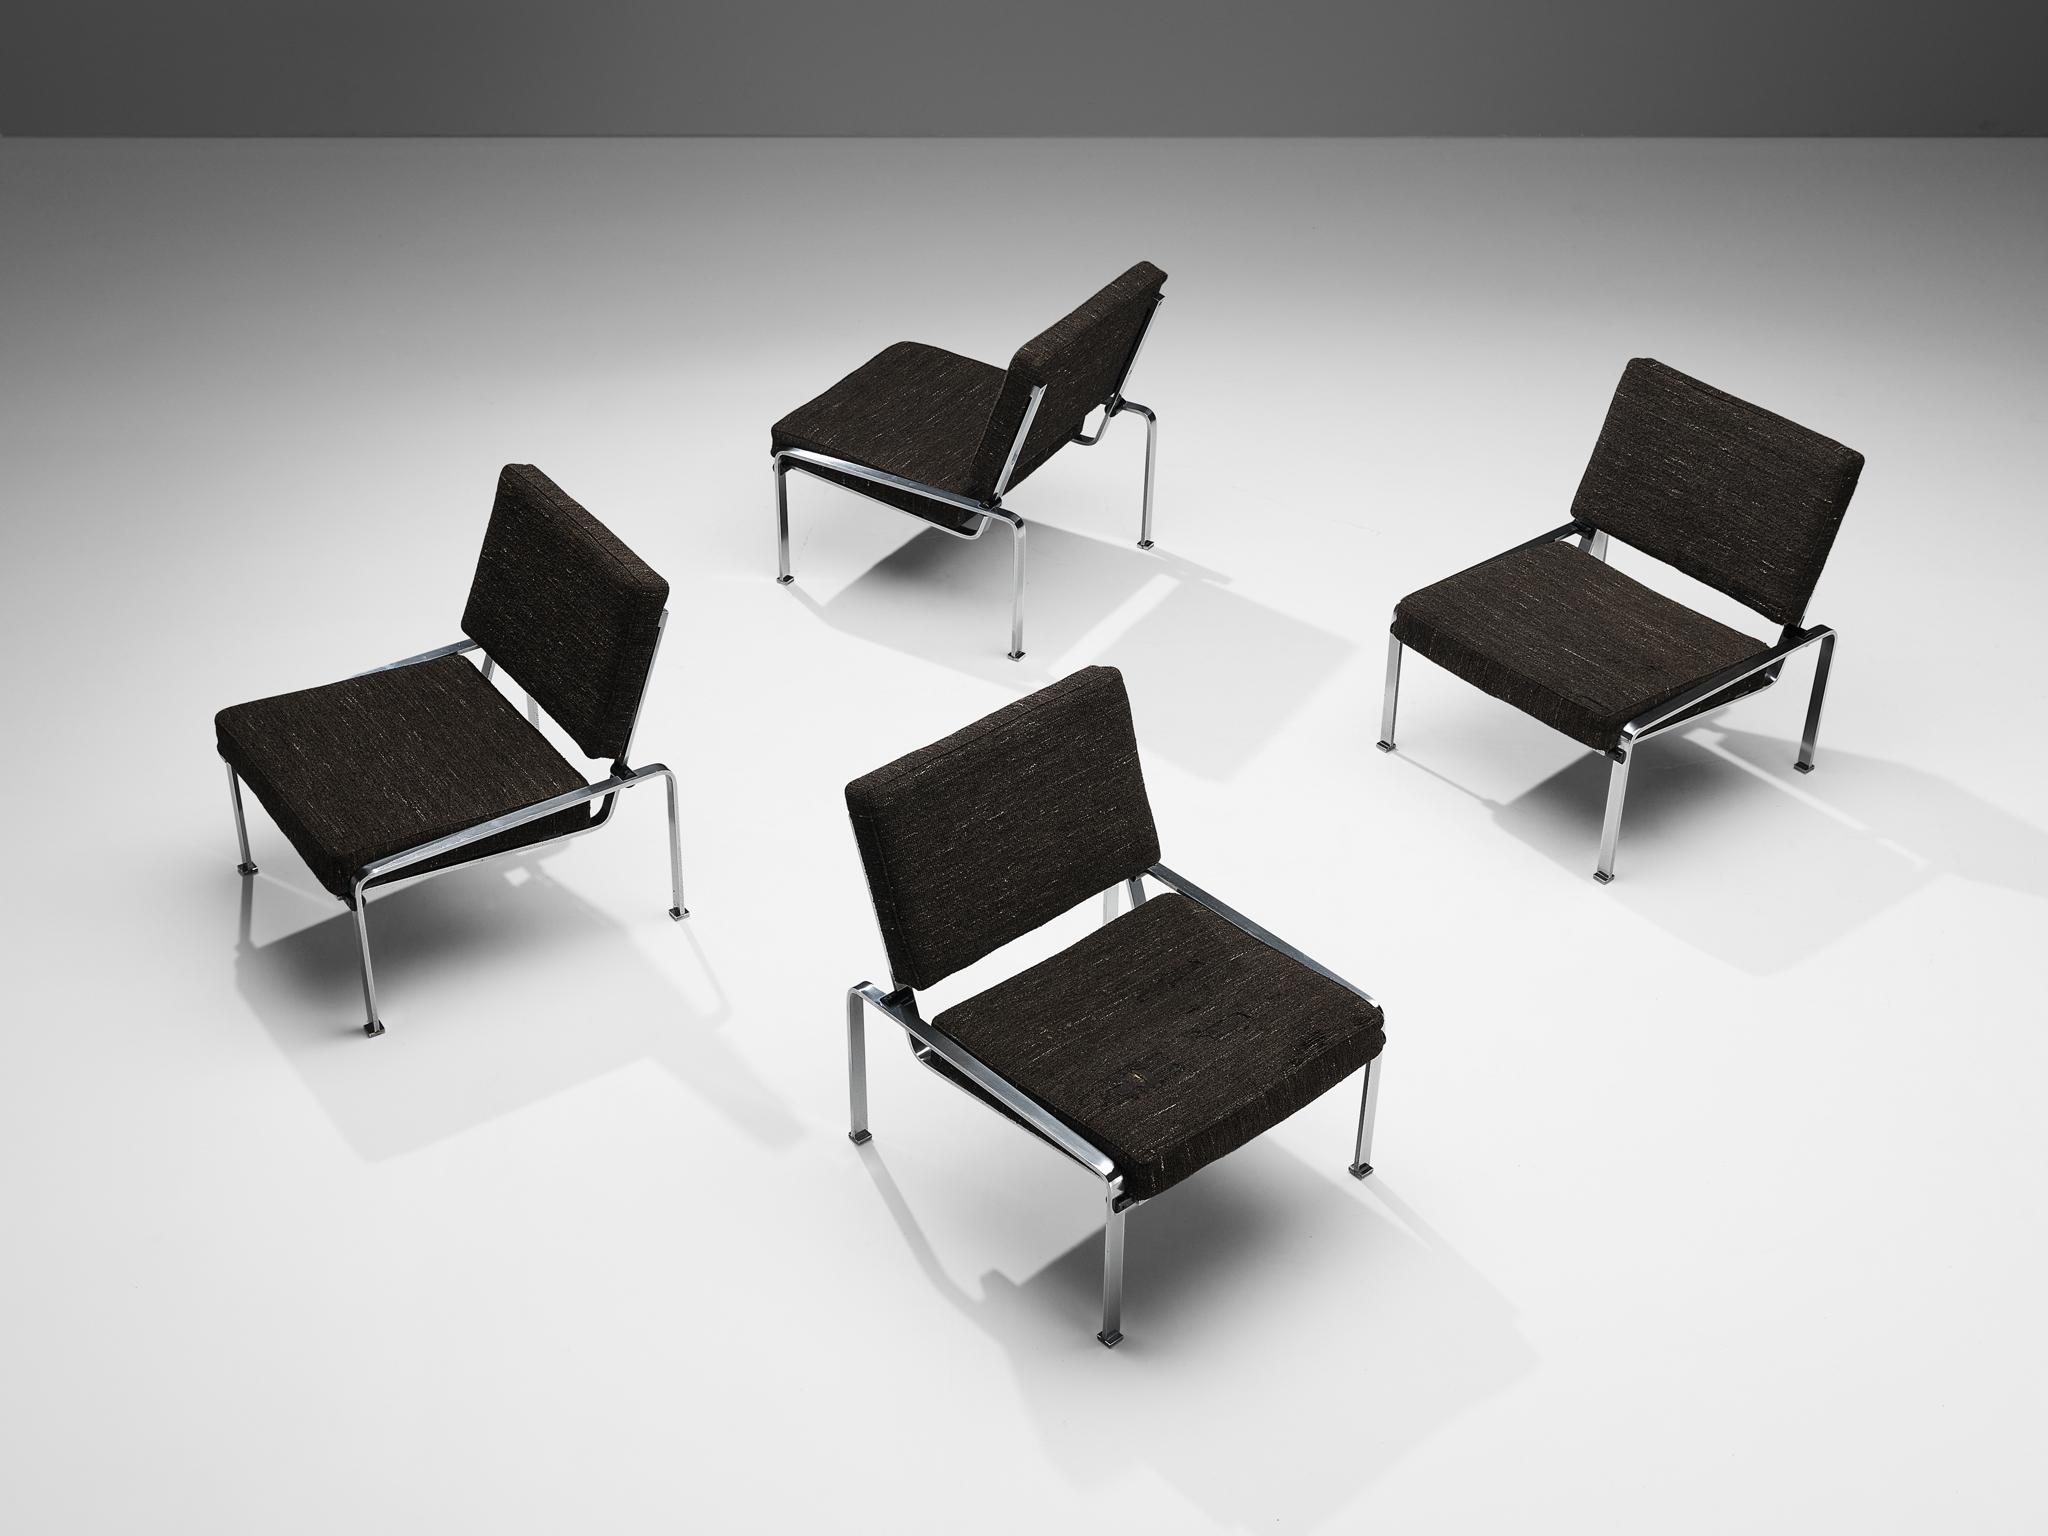 Sessel, verchromter Stahl, Stoff, Europa, 1950er Jahre

Ein stromlinienförmiges Design mit einem minimalistischen Gestell aus verchromtem Stahl, das aus klaren Linien und kantigen Formen besteht. Die geneigte Rückenlehne und der breite Sitz bieten